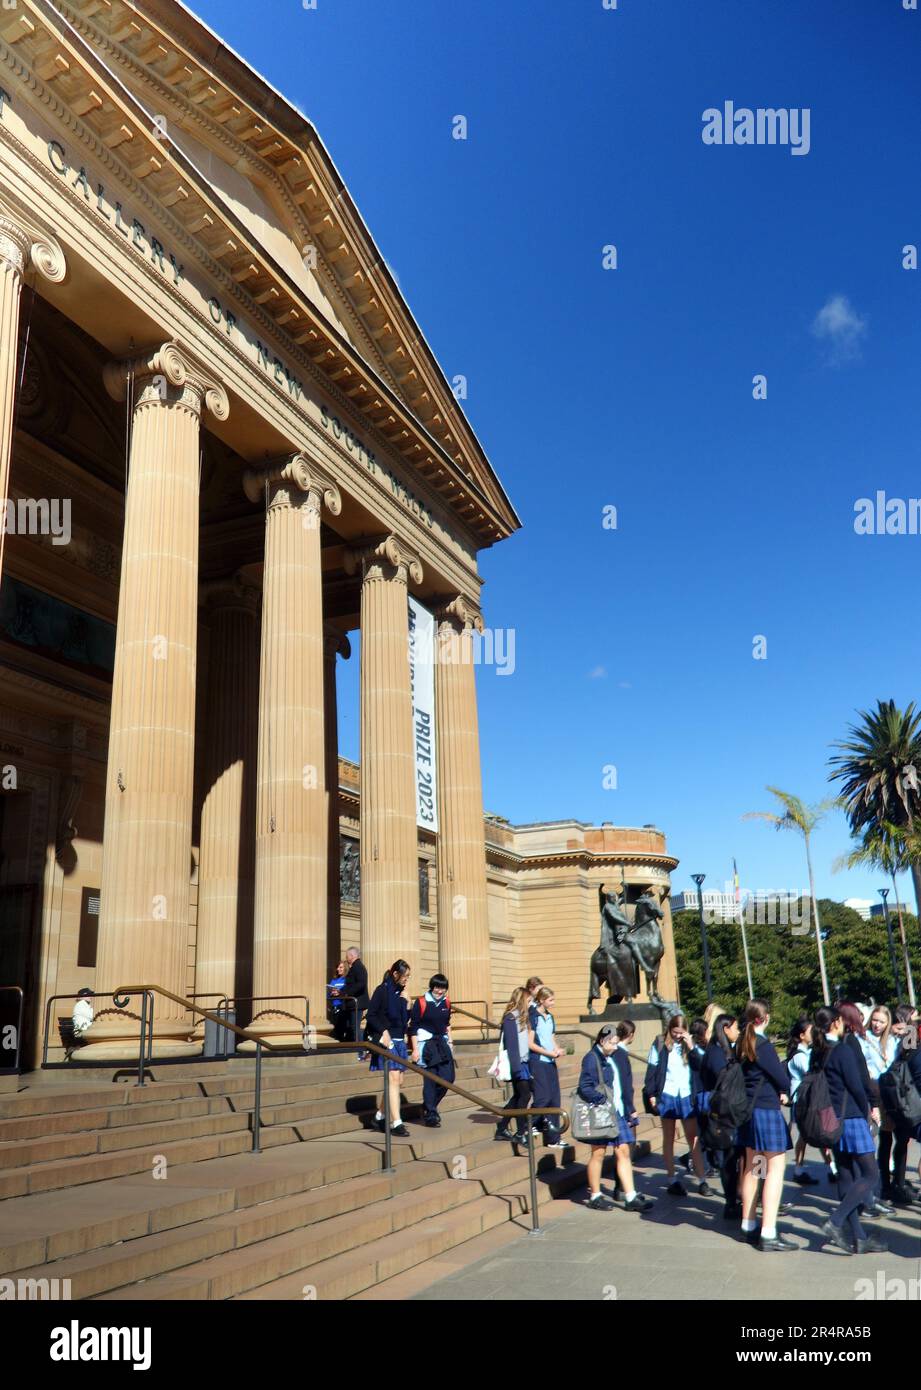 Schulkinder in Uniform verlassen die Art Gallery of NSW, Sydney, Australien. Kein MR oder PR Stockfoto